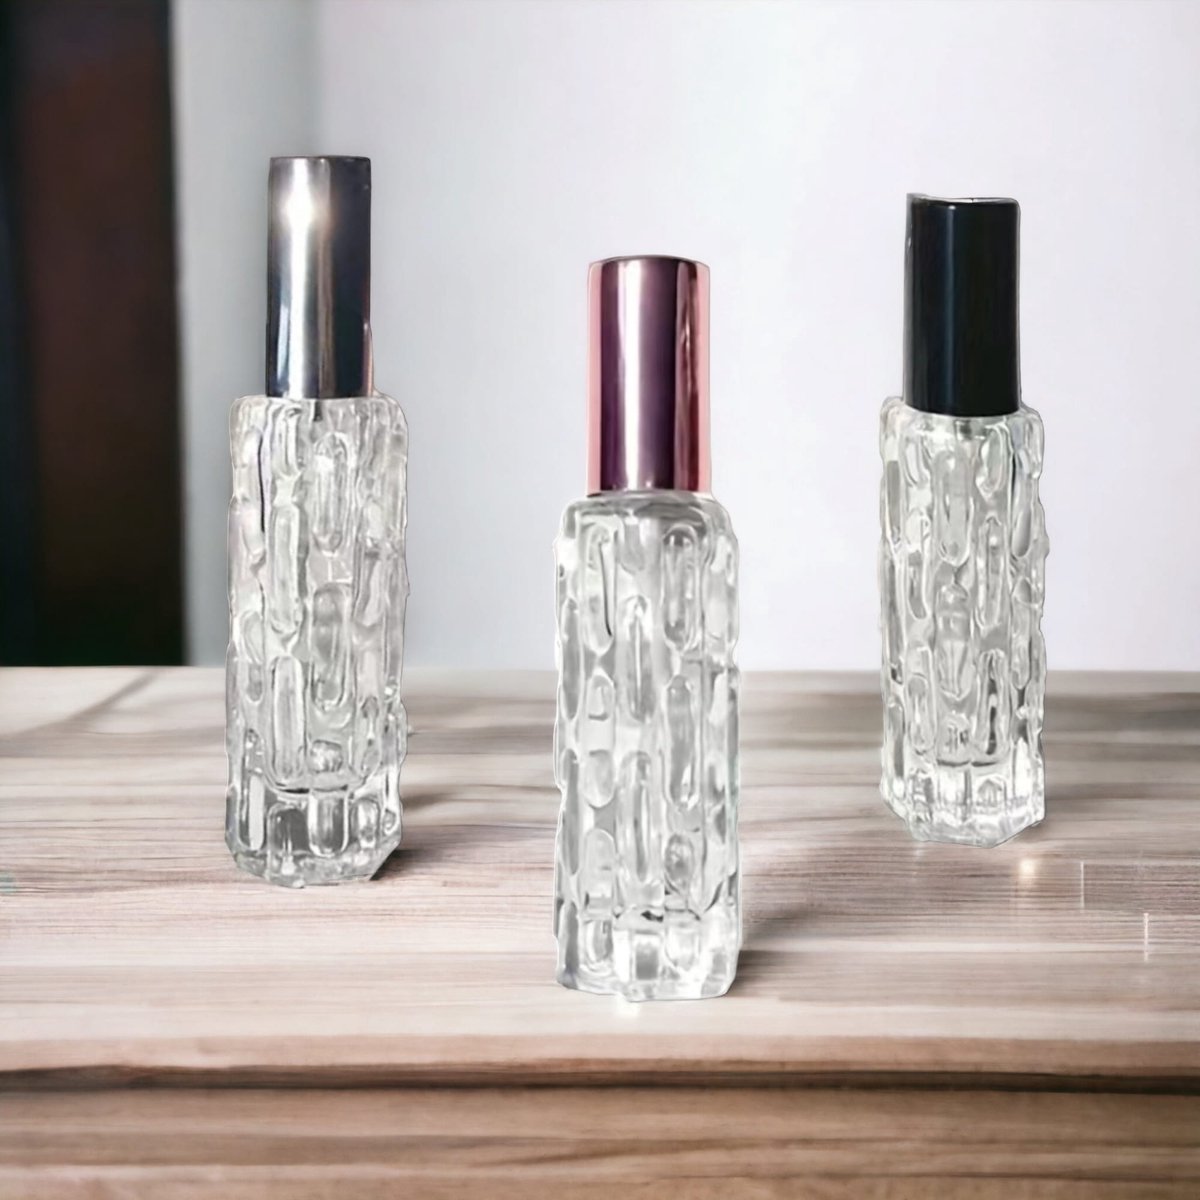 AliRose - Parfum Verstuiver Set - 3x 10ml - Rose Goud, Zilver & Zwart - Kristal Glas - Inclusief Optrek Spuitje - Herbruikbaar